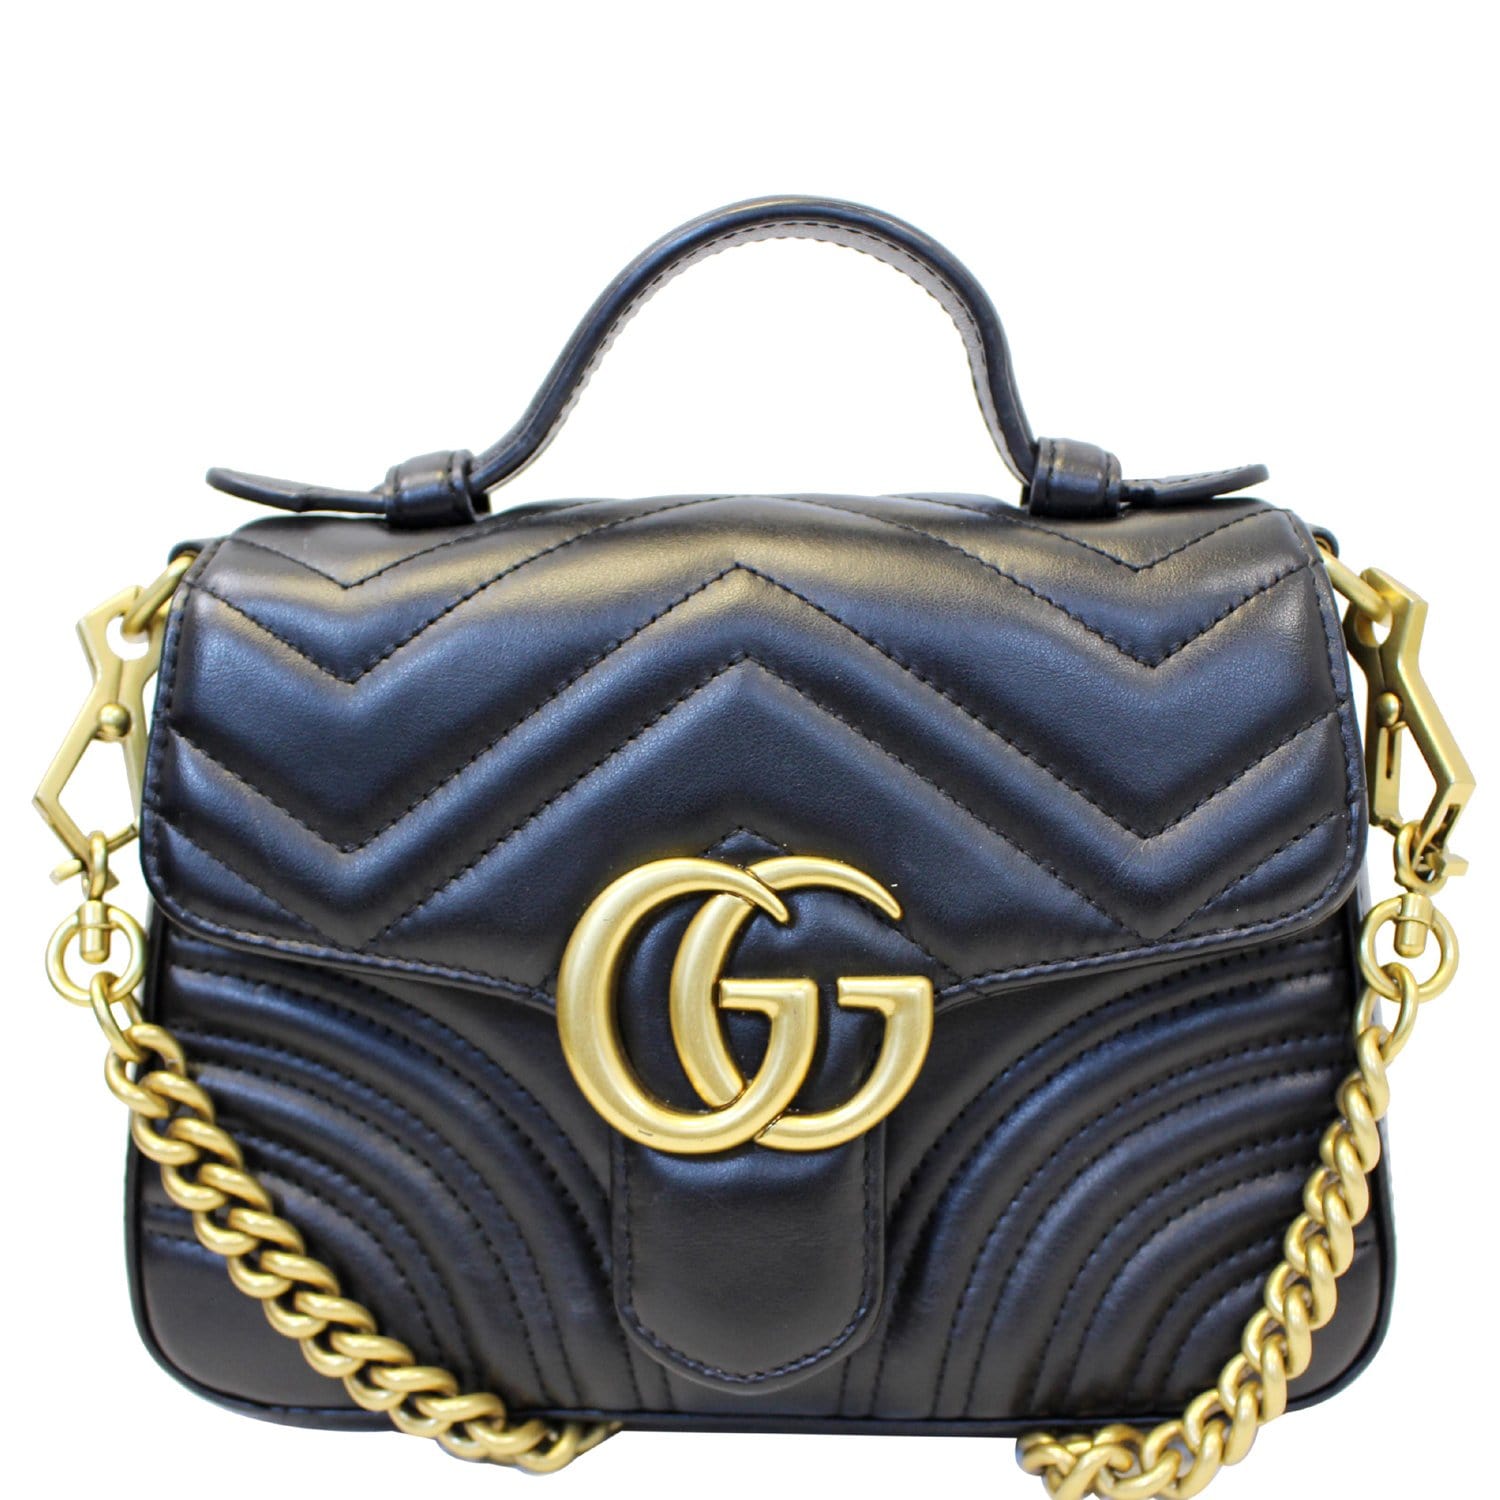 GG Marmont small top handle bag